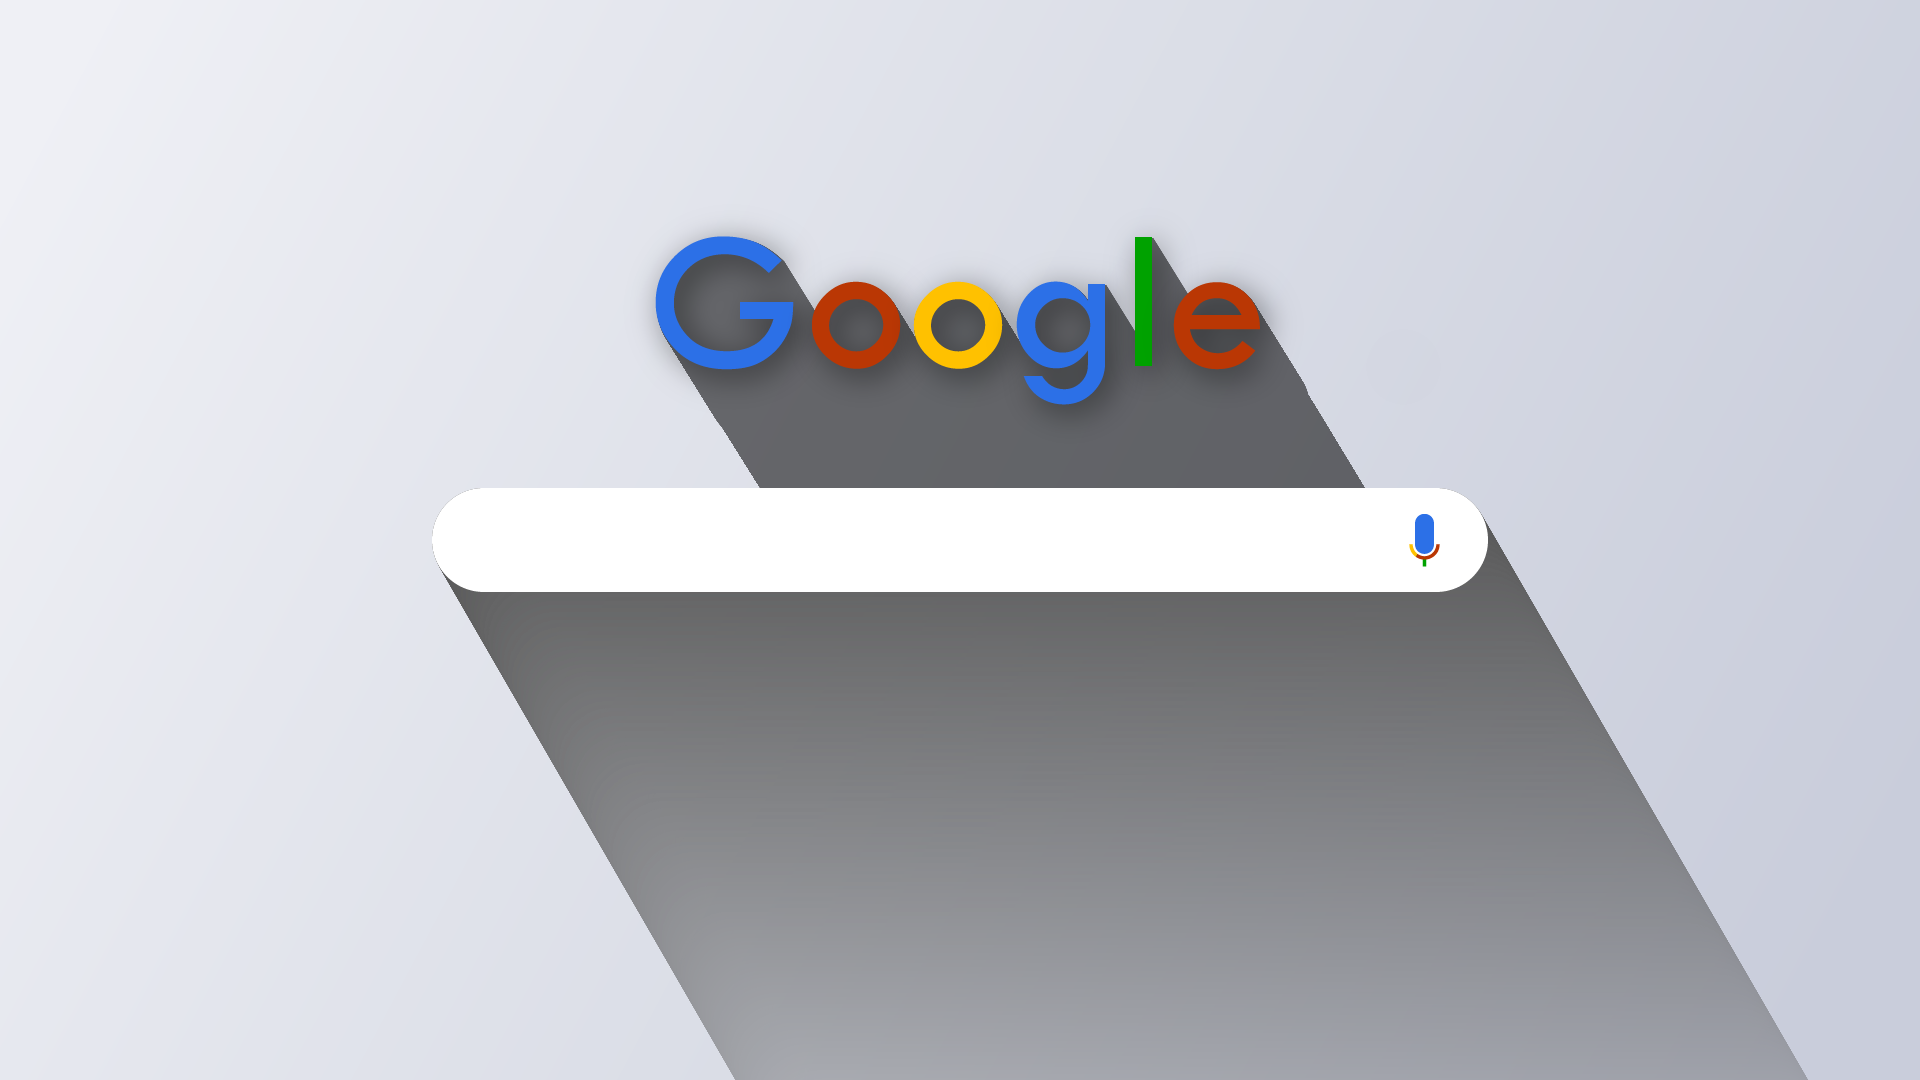 Google Google Chrome Web Design Logo 1920x1080